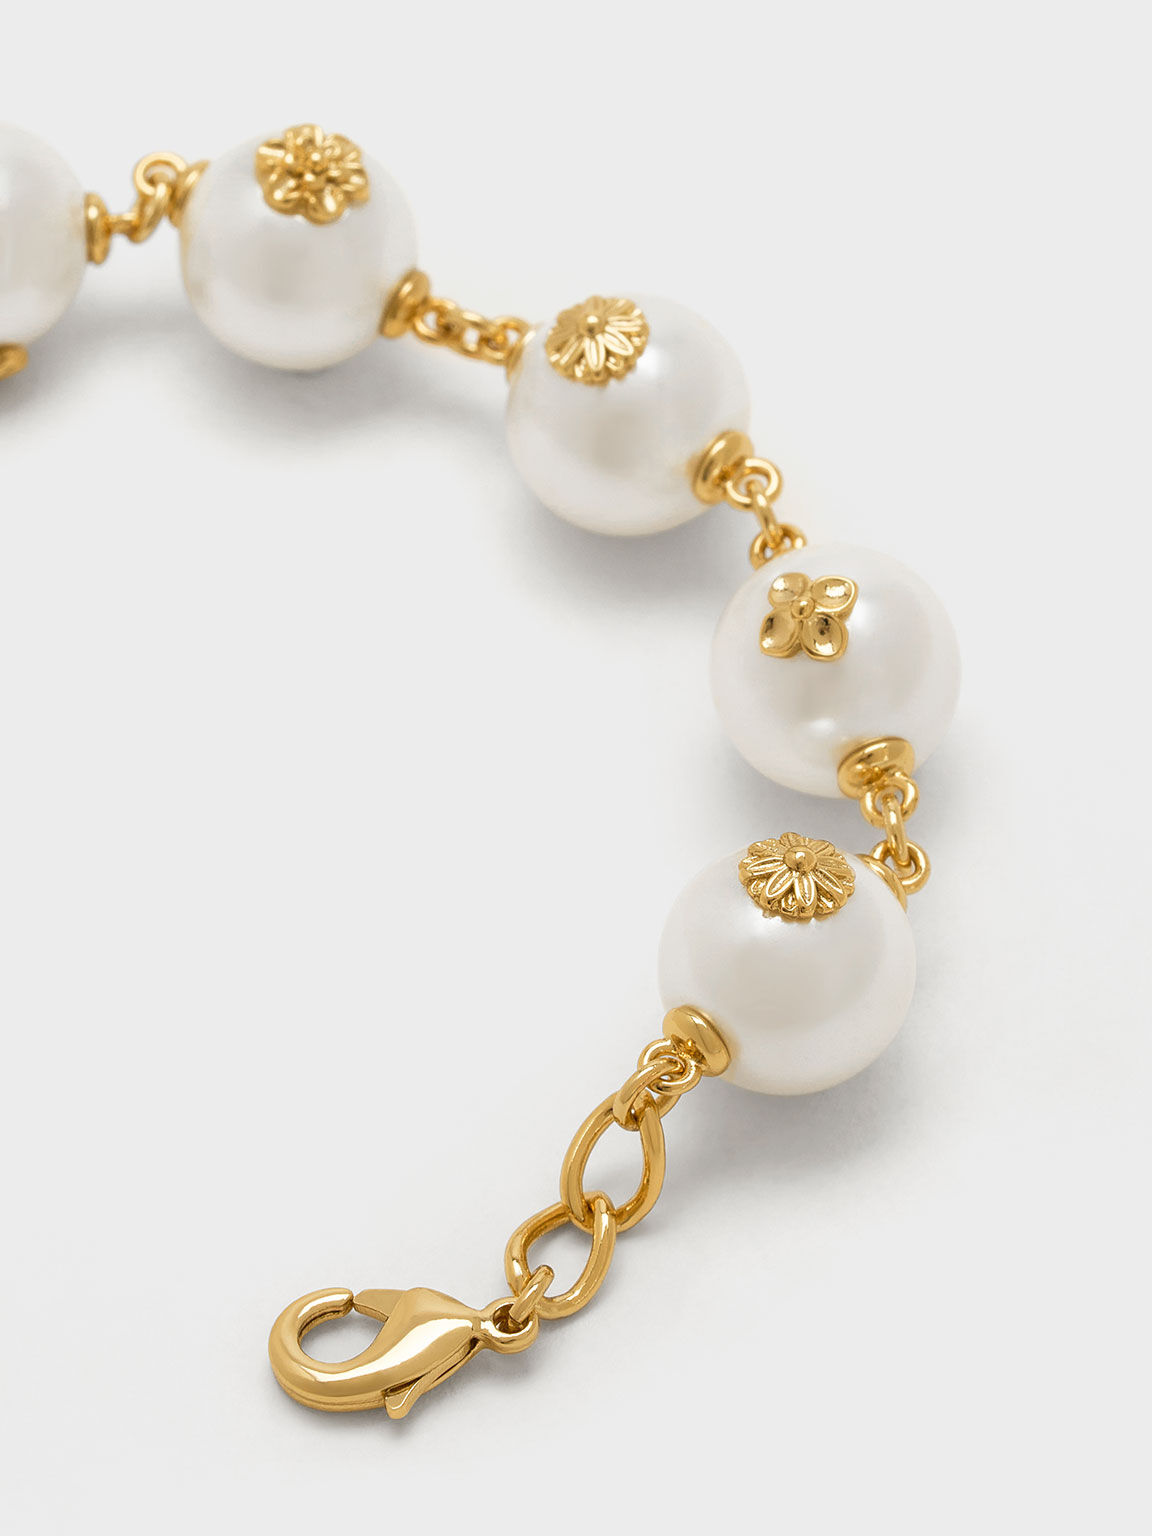 Flower-Embellished Pearl Bracelet, Gold, hi-res